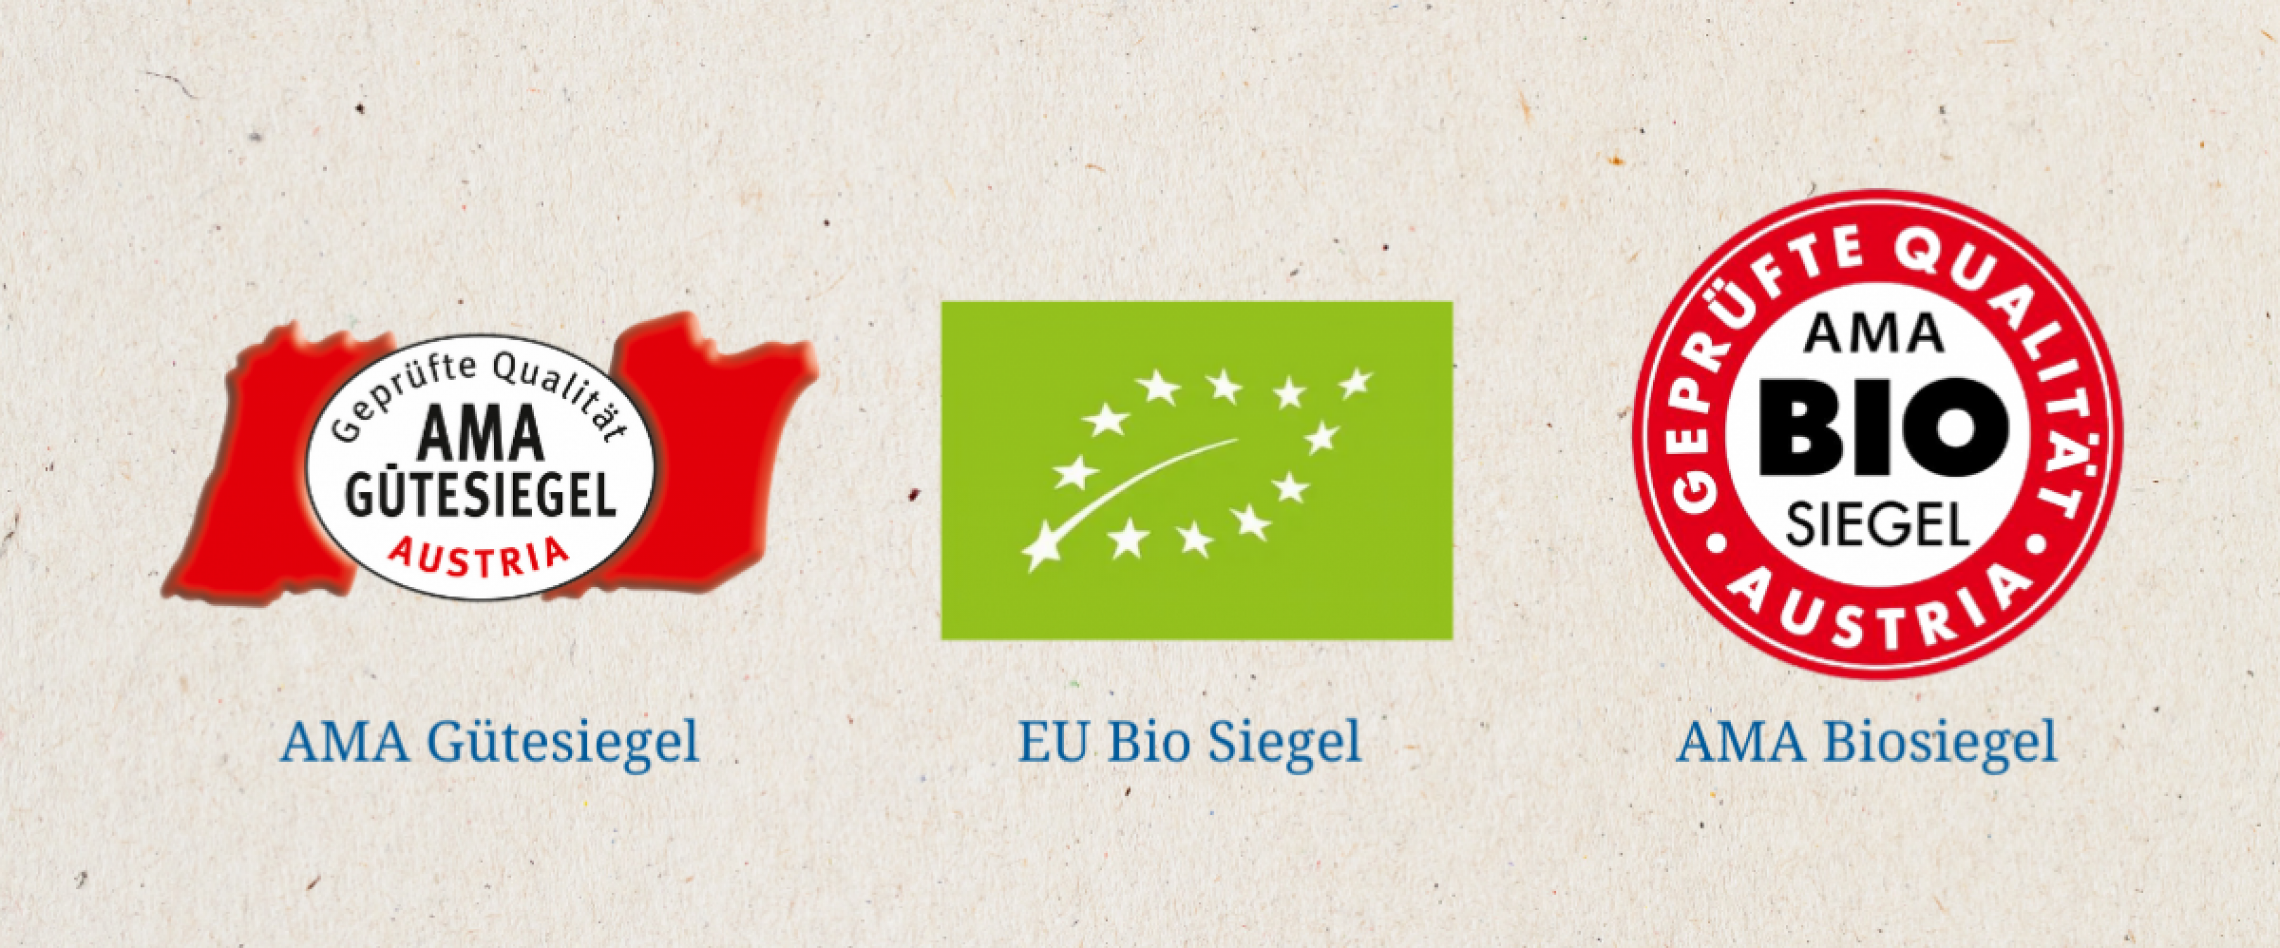 Die genannten Gütesiegel: AMA Gütesiegel, EU Bio Siegel und AMA Biosiegel